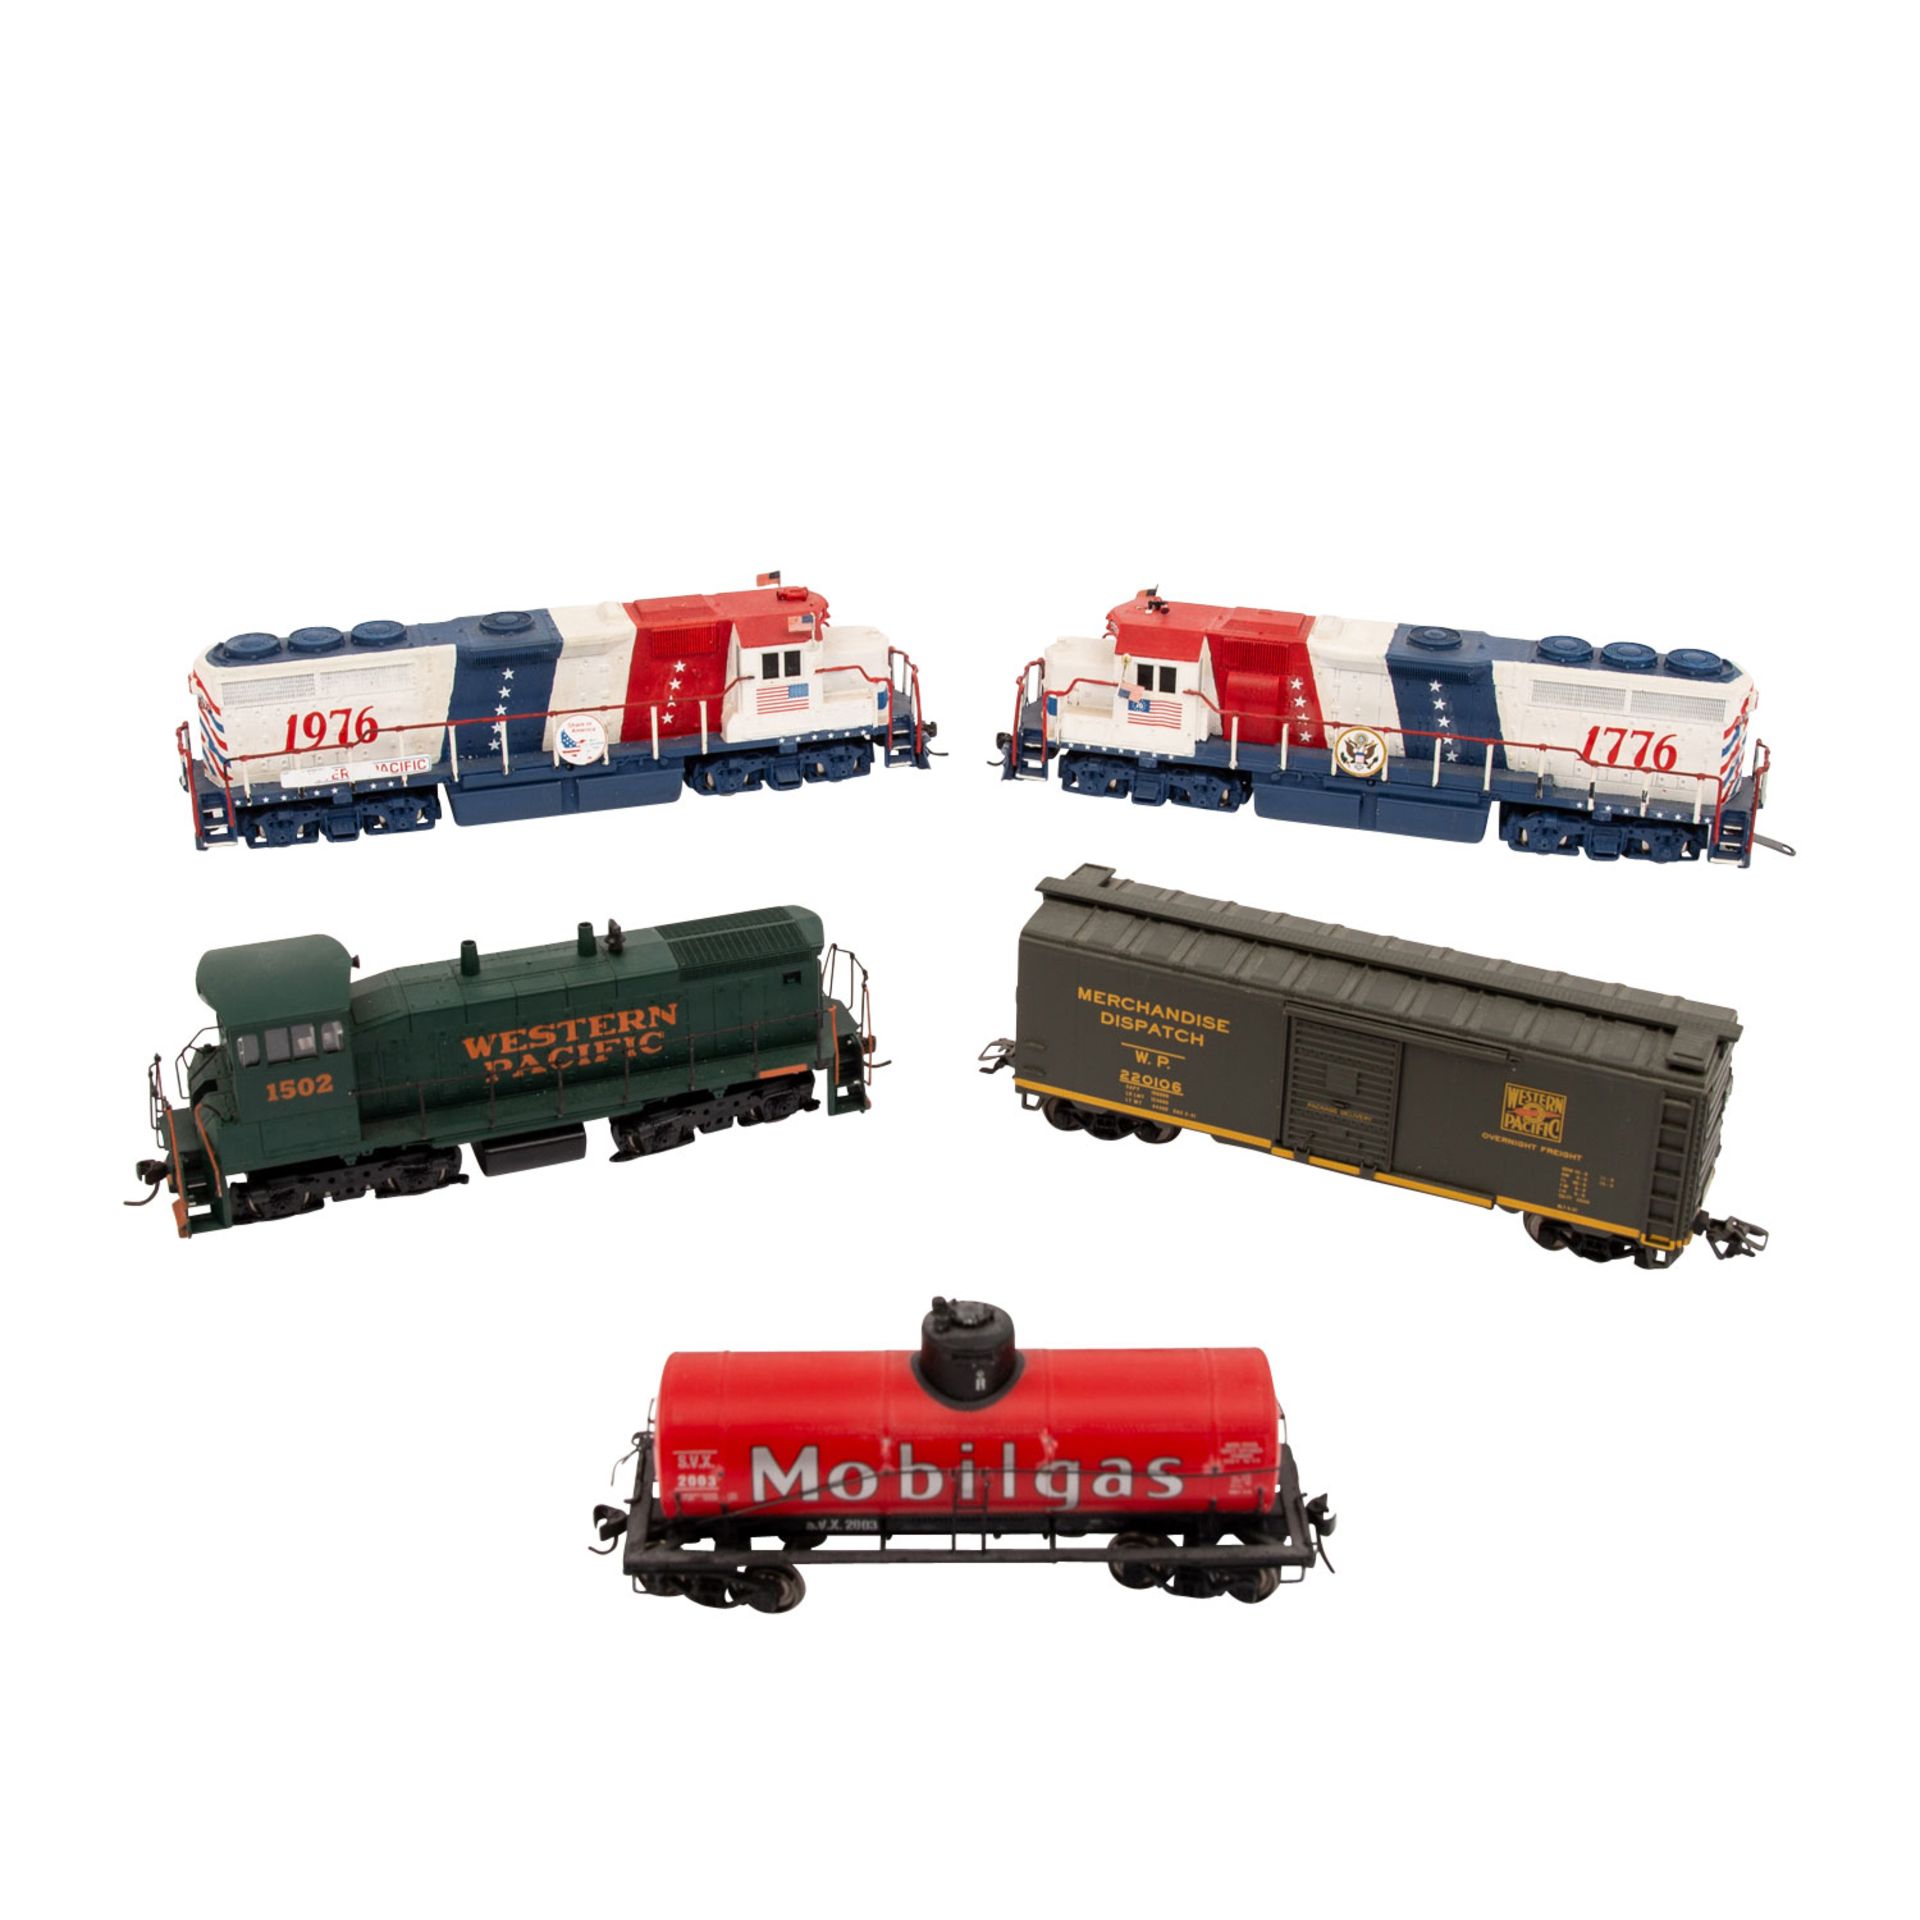 ATLAS/LIFE-LIKE u.a. Konvolut Diesellokomotiven und Güterwägen, Spur H0, bestehend aus 8 Dieselloks - Bild 4 aus 4